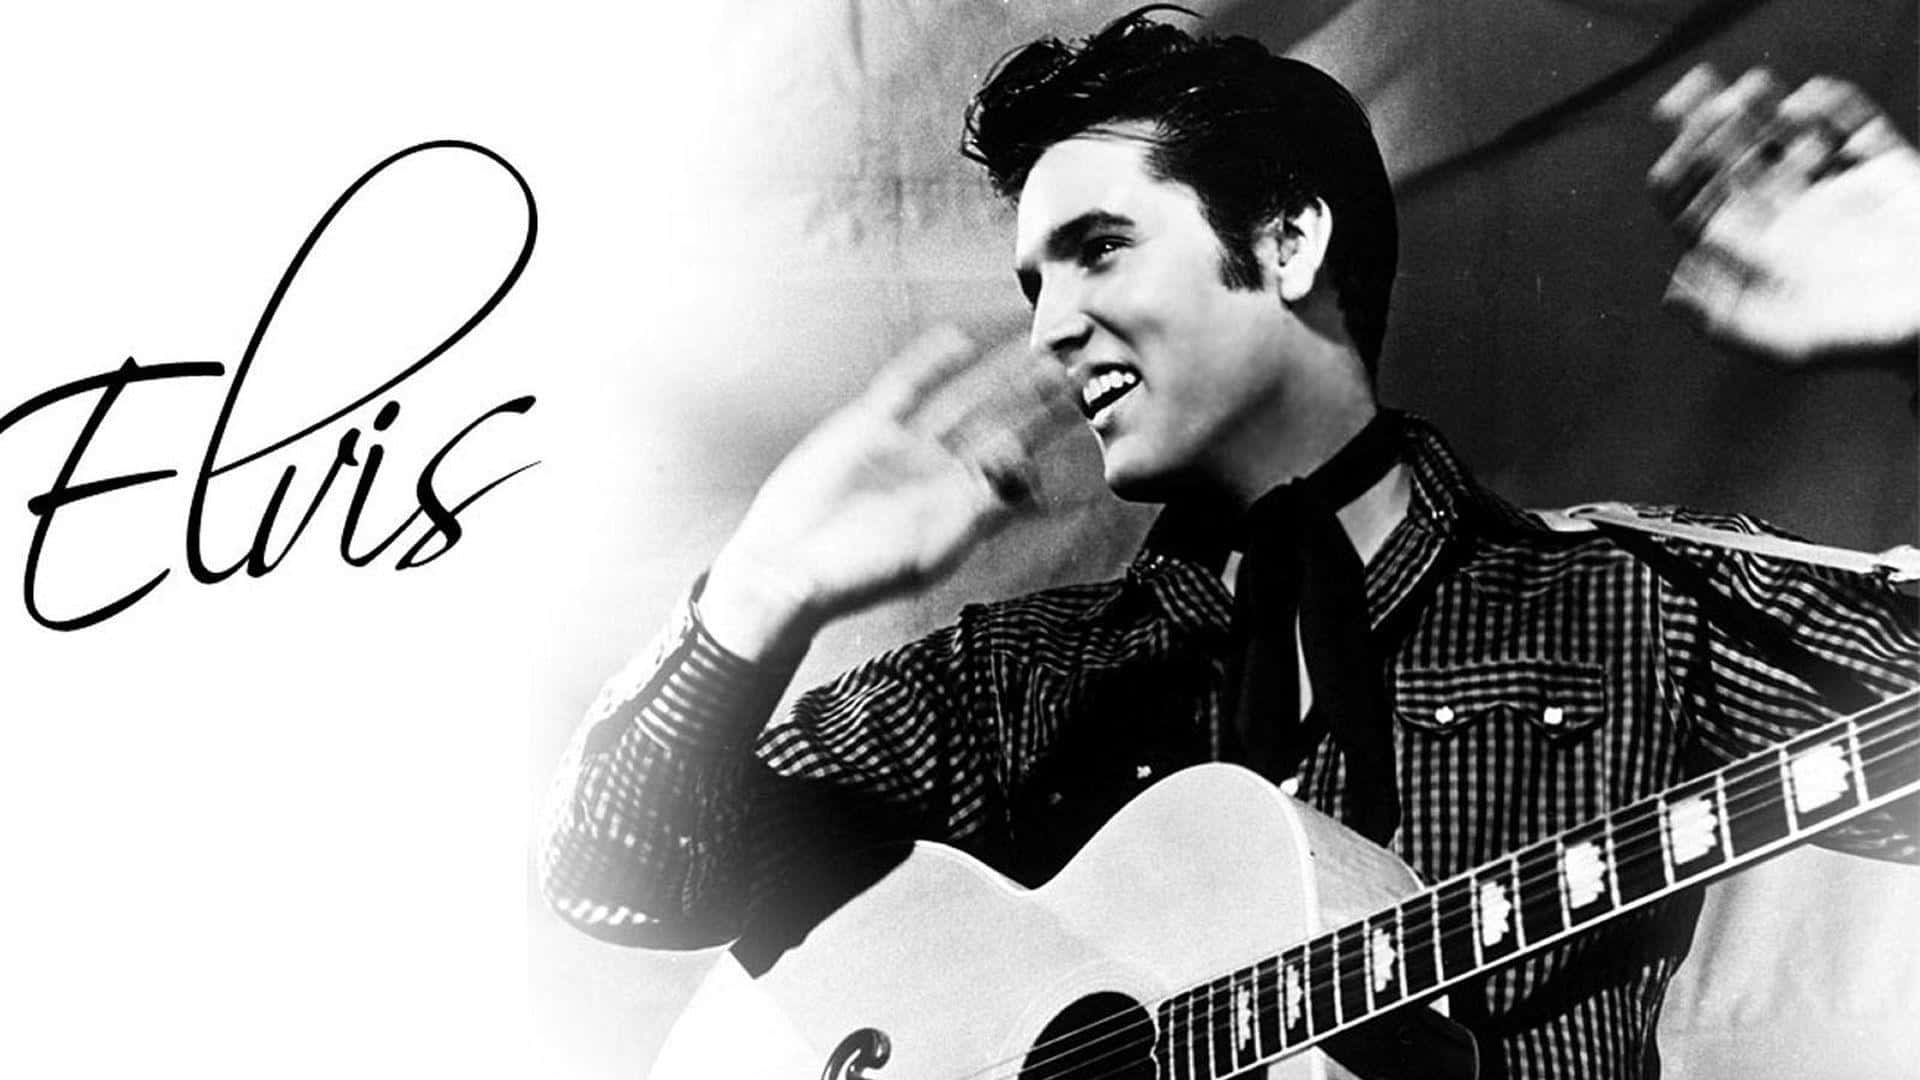 "The King of Rock 'n' Roll - Elvis Presley"